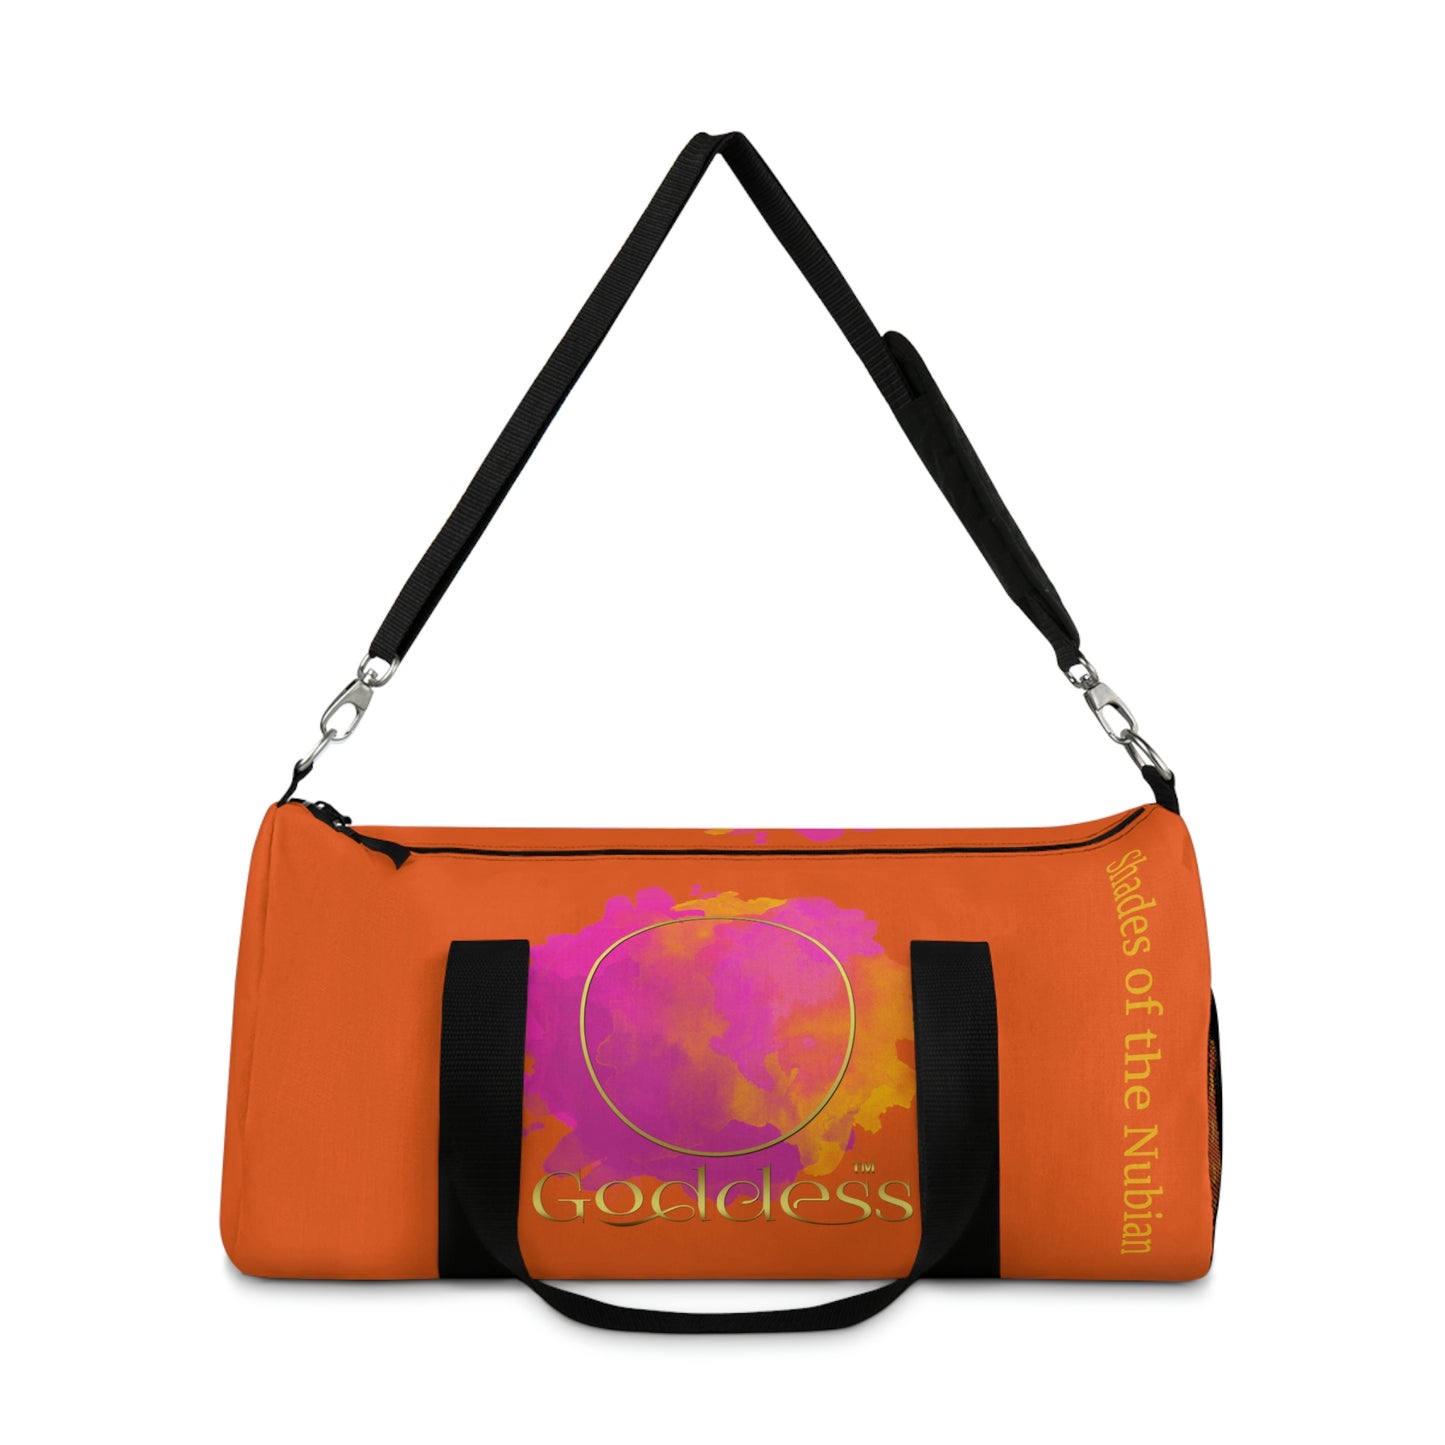 Goddess Duffel Bag, Tangerine